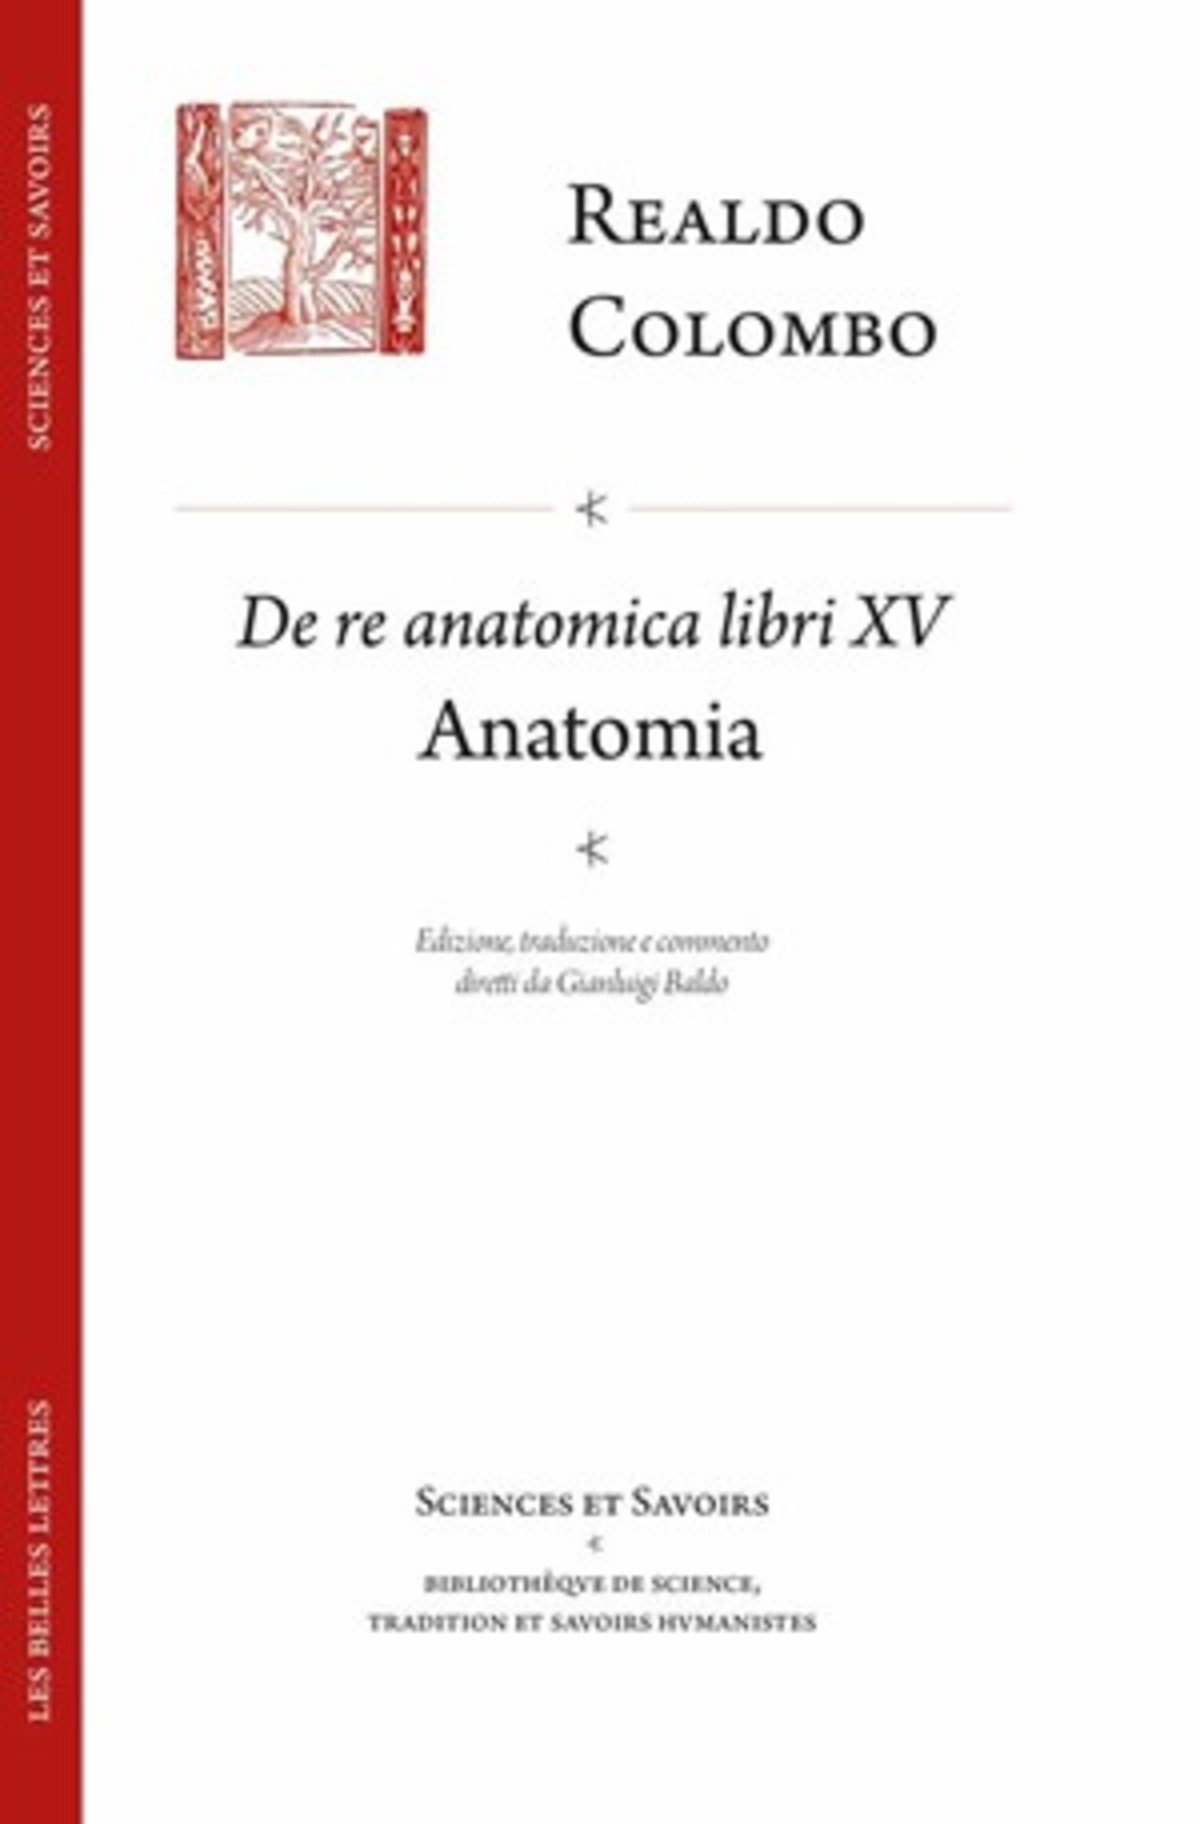 De Re anatomica libri XV